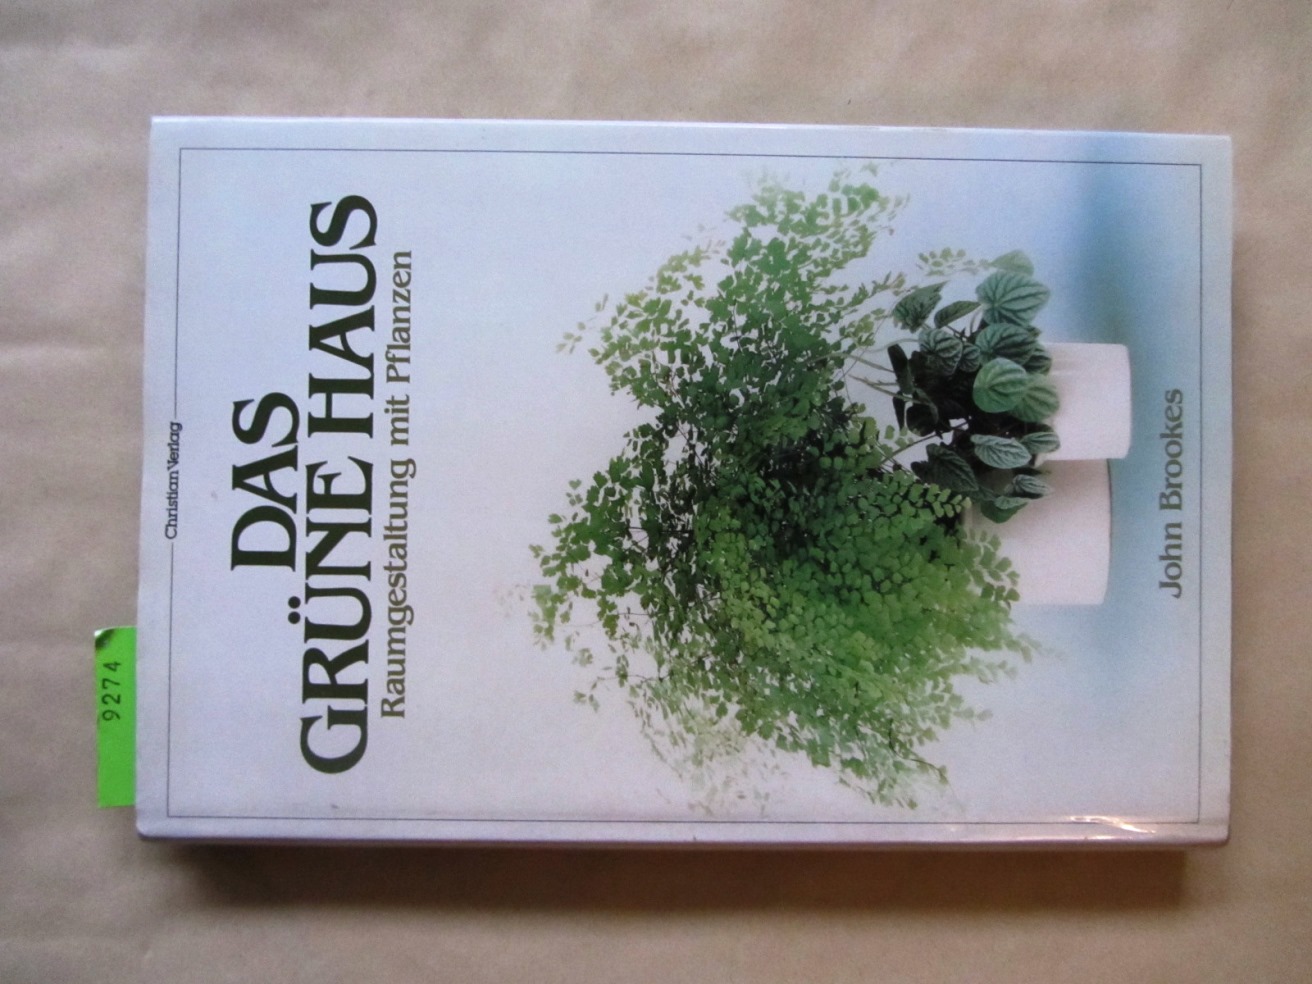 Brookes, John:  Das grüne Haus. Raumgestaltung mit Pflanzen. Aus dem Englischen. 